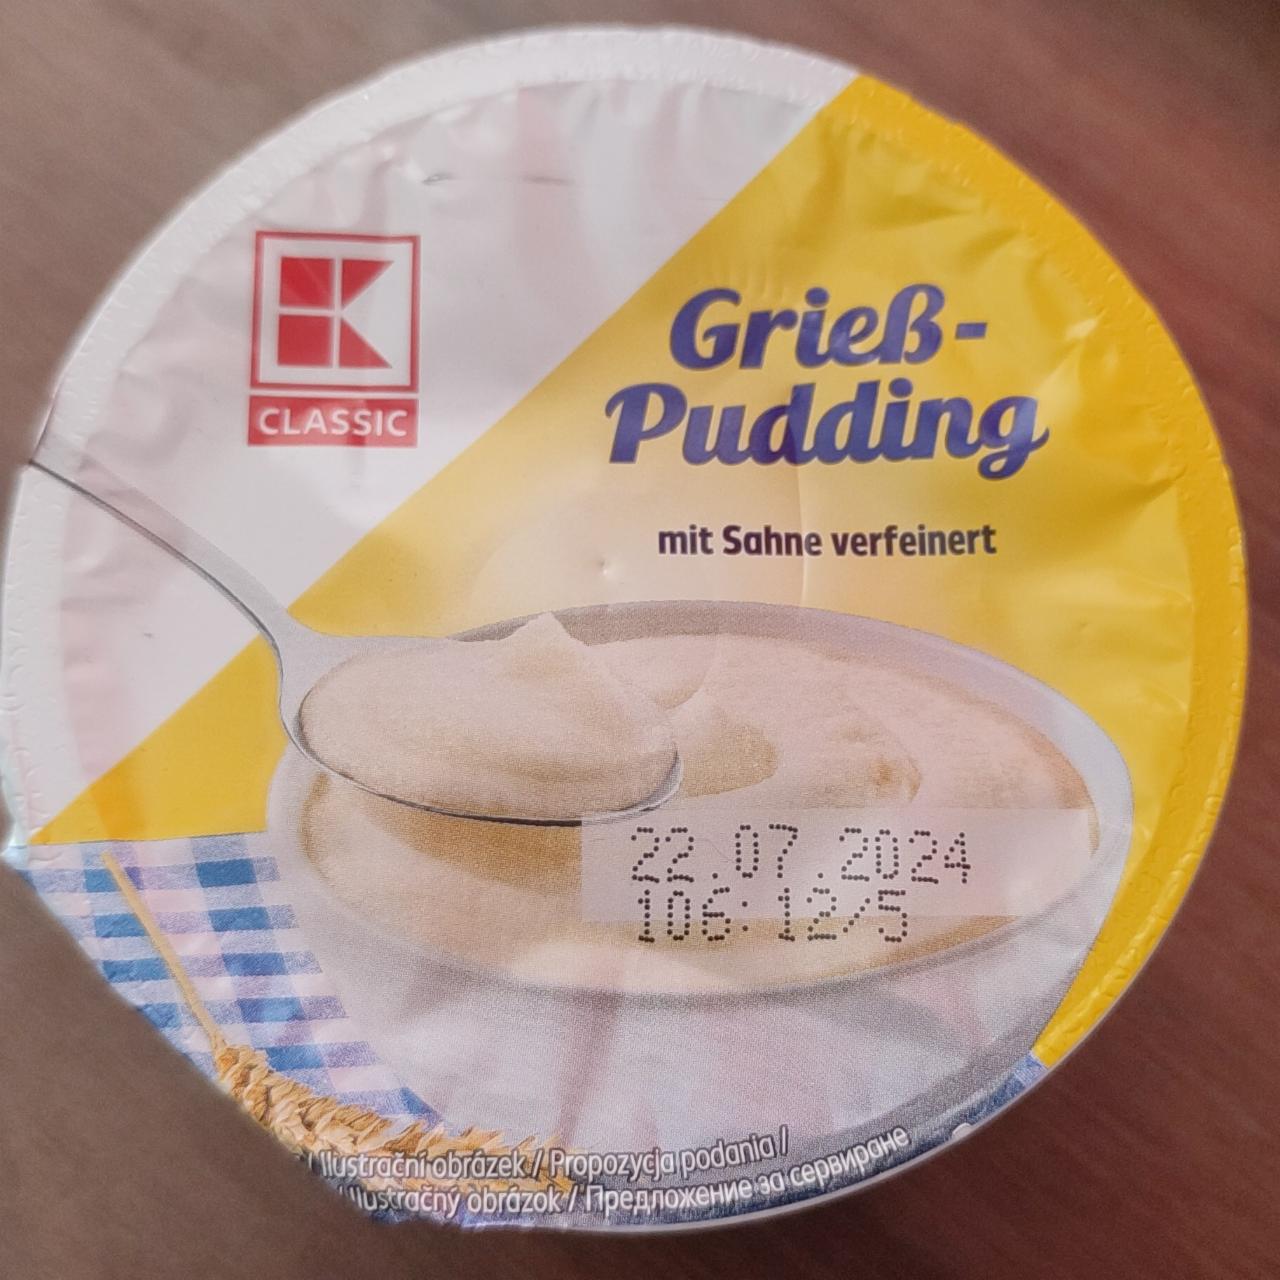 Fotografie - Grieß-Pudding K-Classic